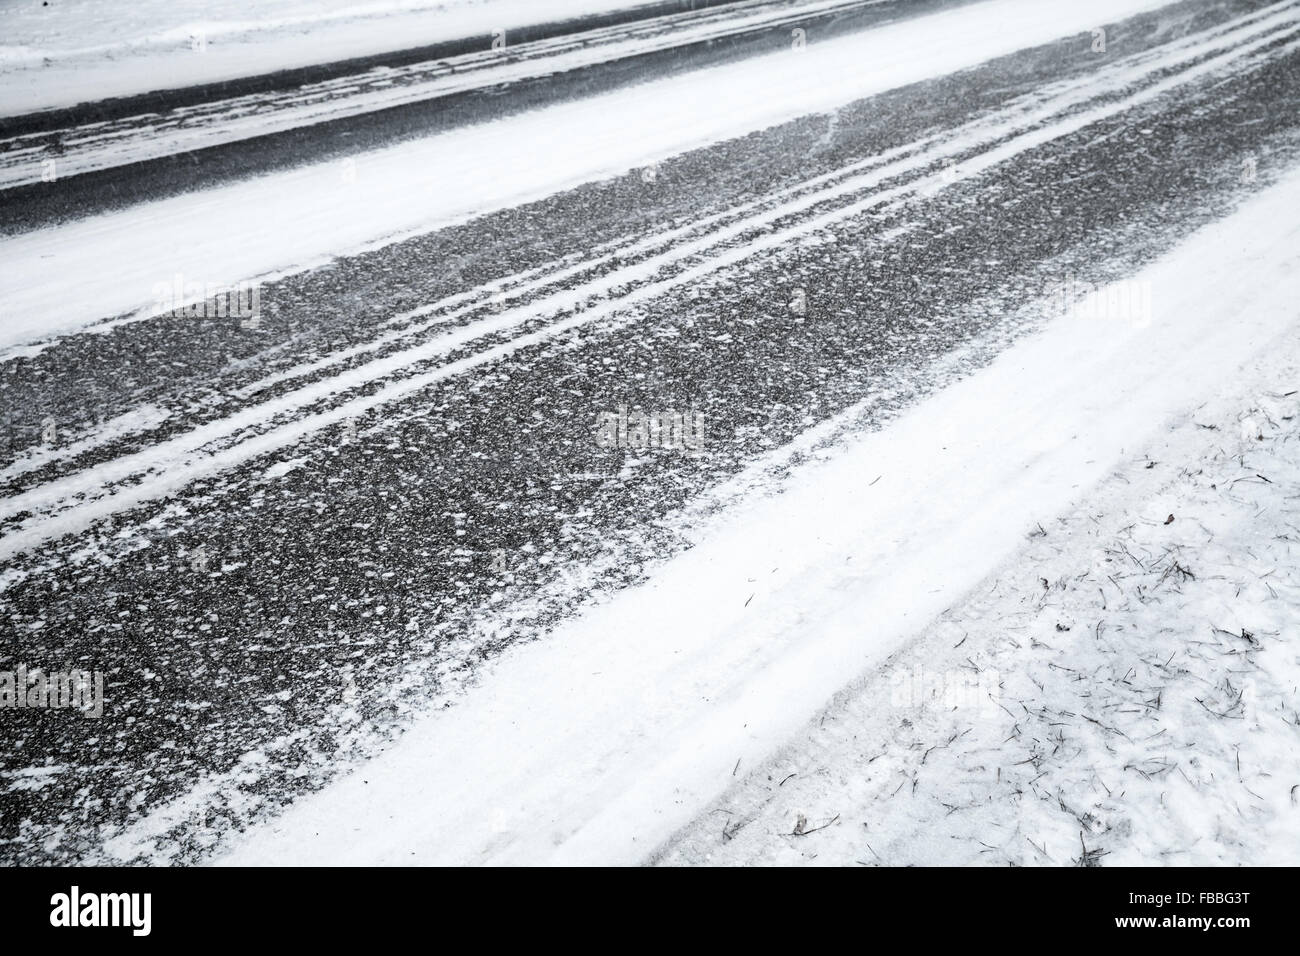 Fond d'hiver route glissante en asphalte, sous la couche de neige fraîche Banque D'Images